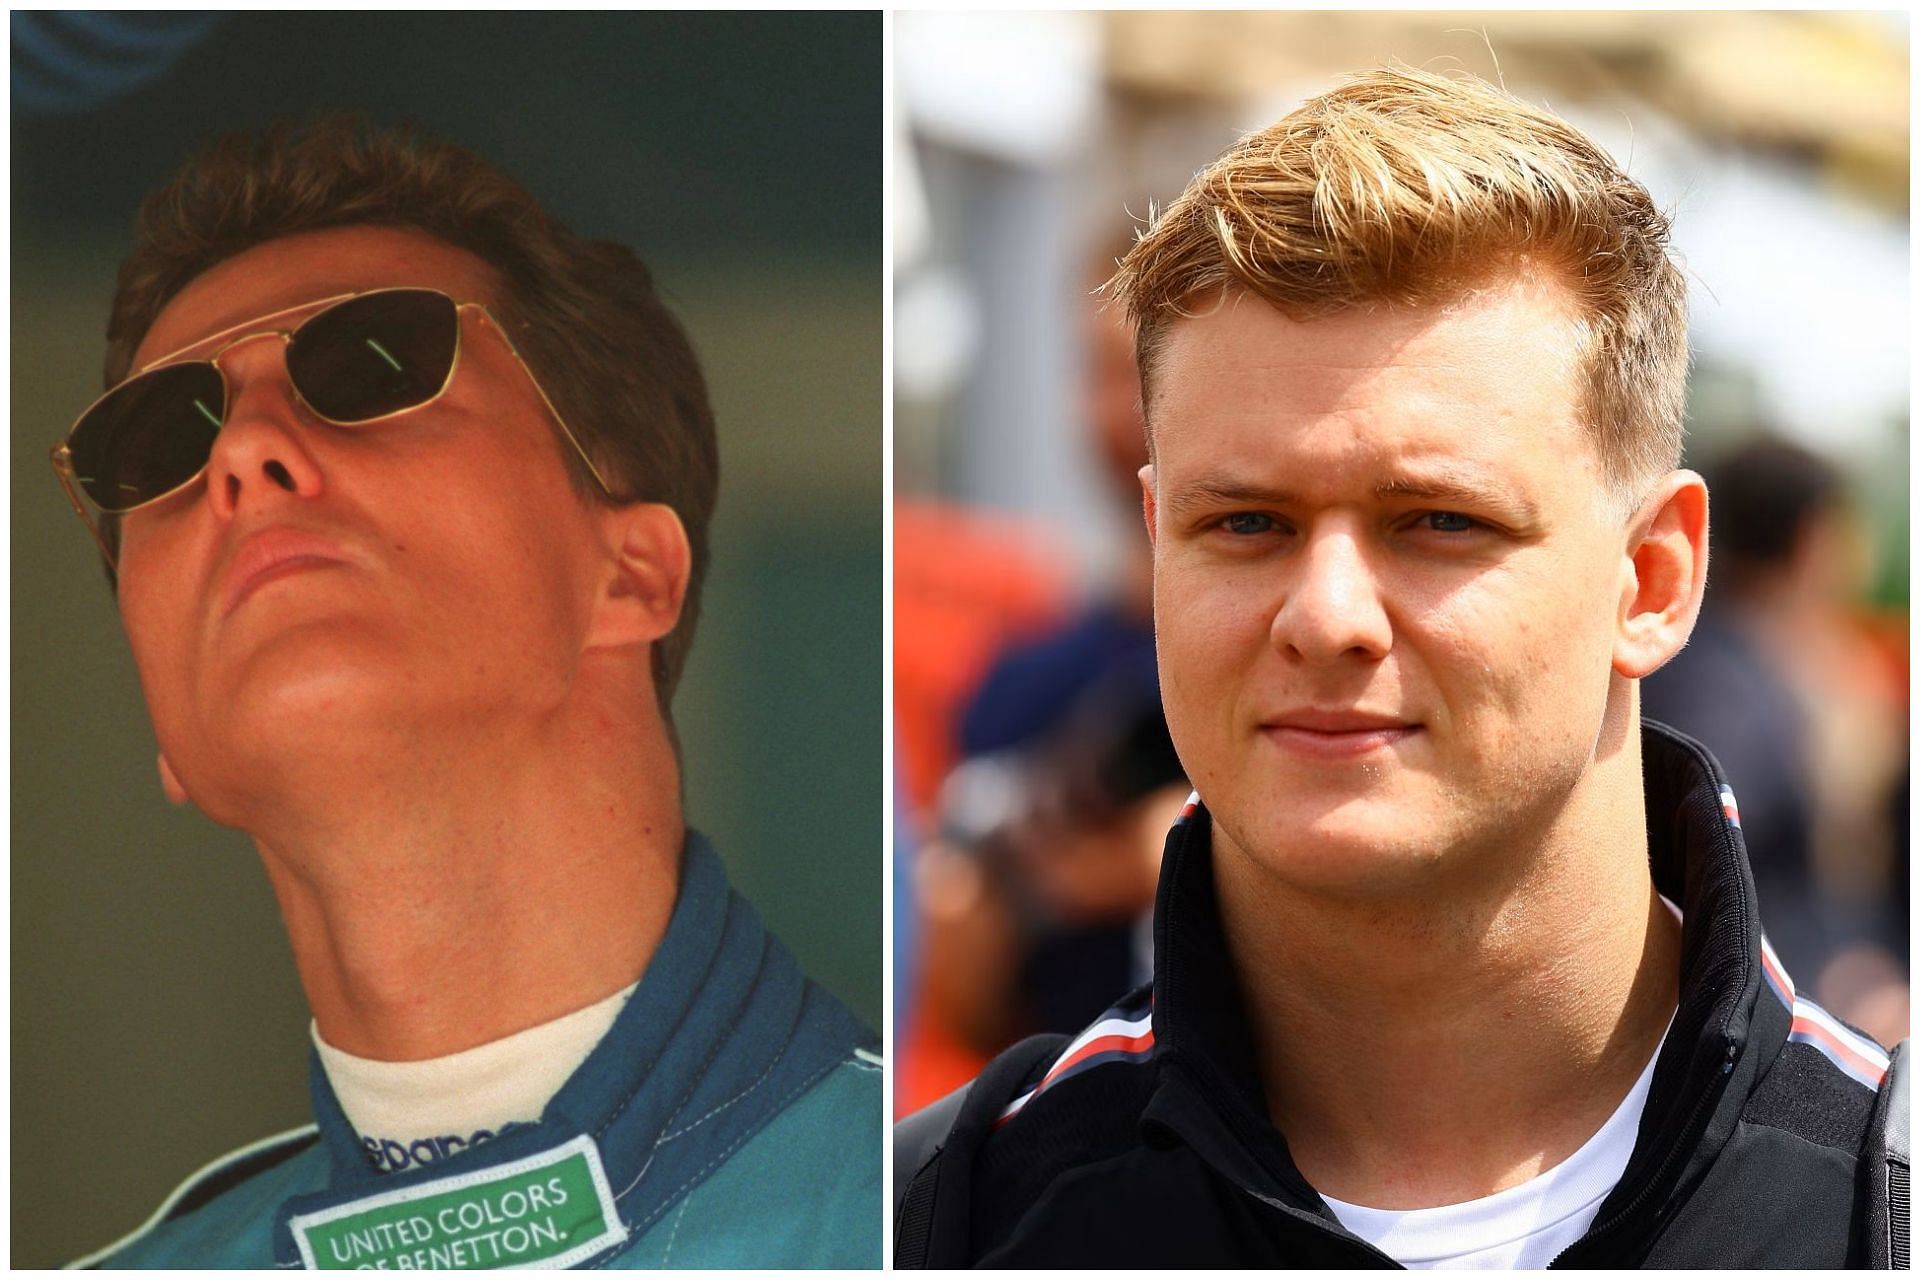 Michael Schumacher (L) and Mick Schumacher (R) (Collage via Sportskeeda)